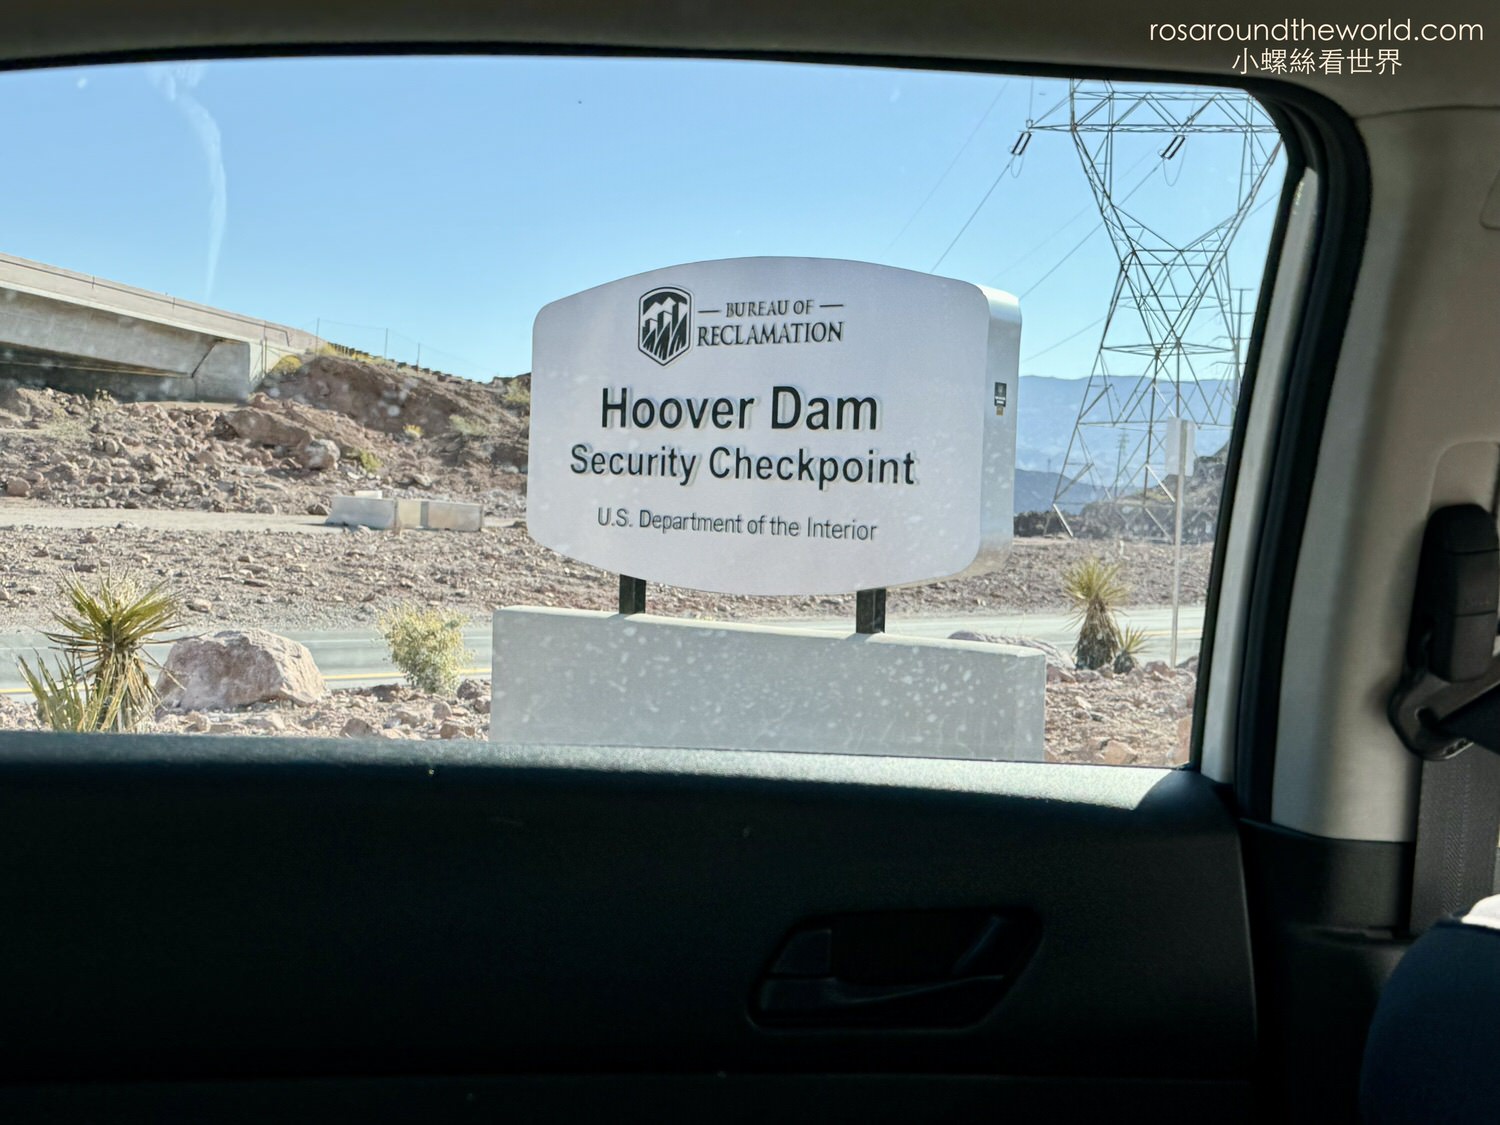 胡佛水壩 Hoover Dam
沙漠之鑽(Diamond on the desert)